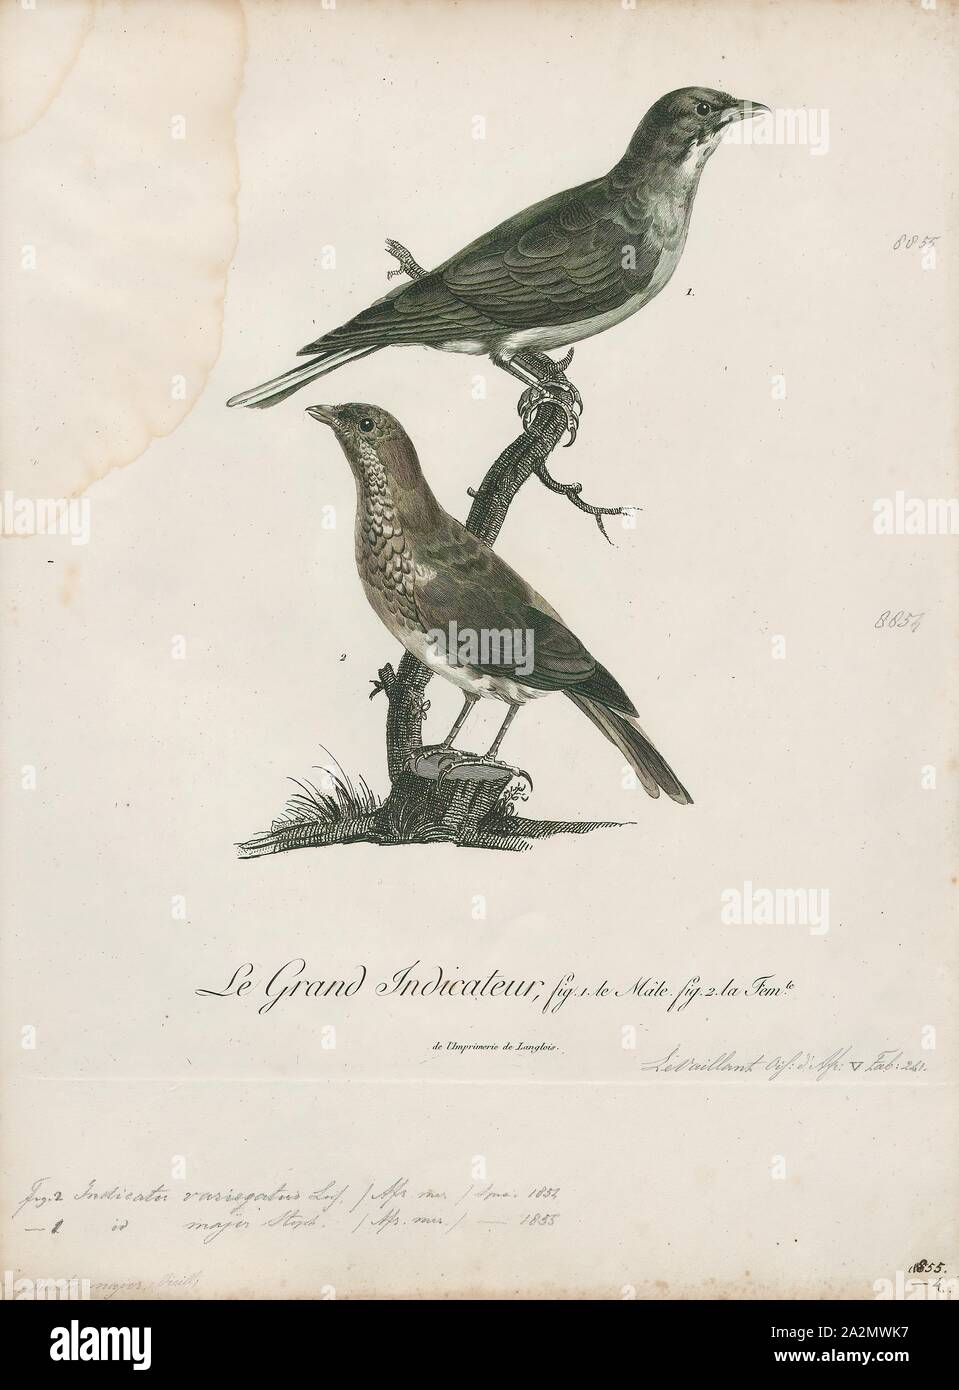 Anzeige variegatus, Ausdrucken, die Schuppigen-throated honeyguide (Indikator variegatus) ist eine Vogelart aus der Familie Indicatoridae., 1796-1808 Stockfoto